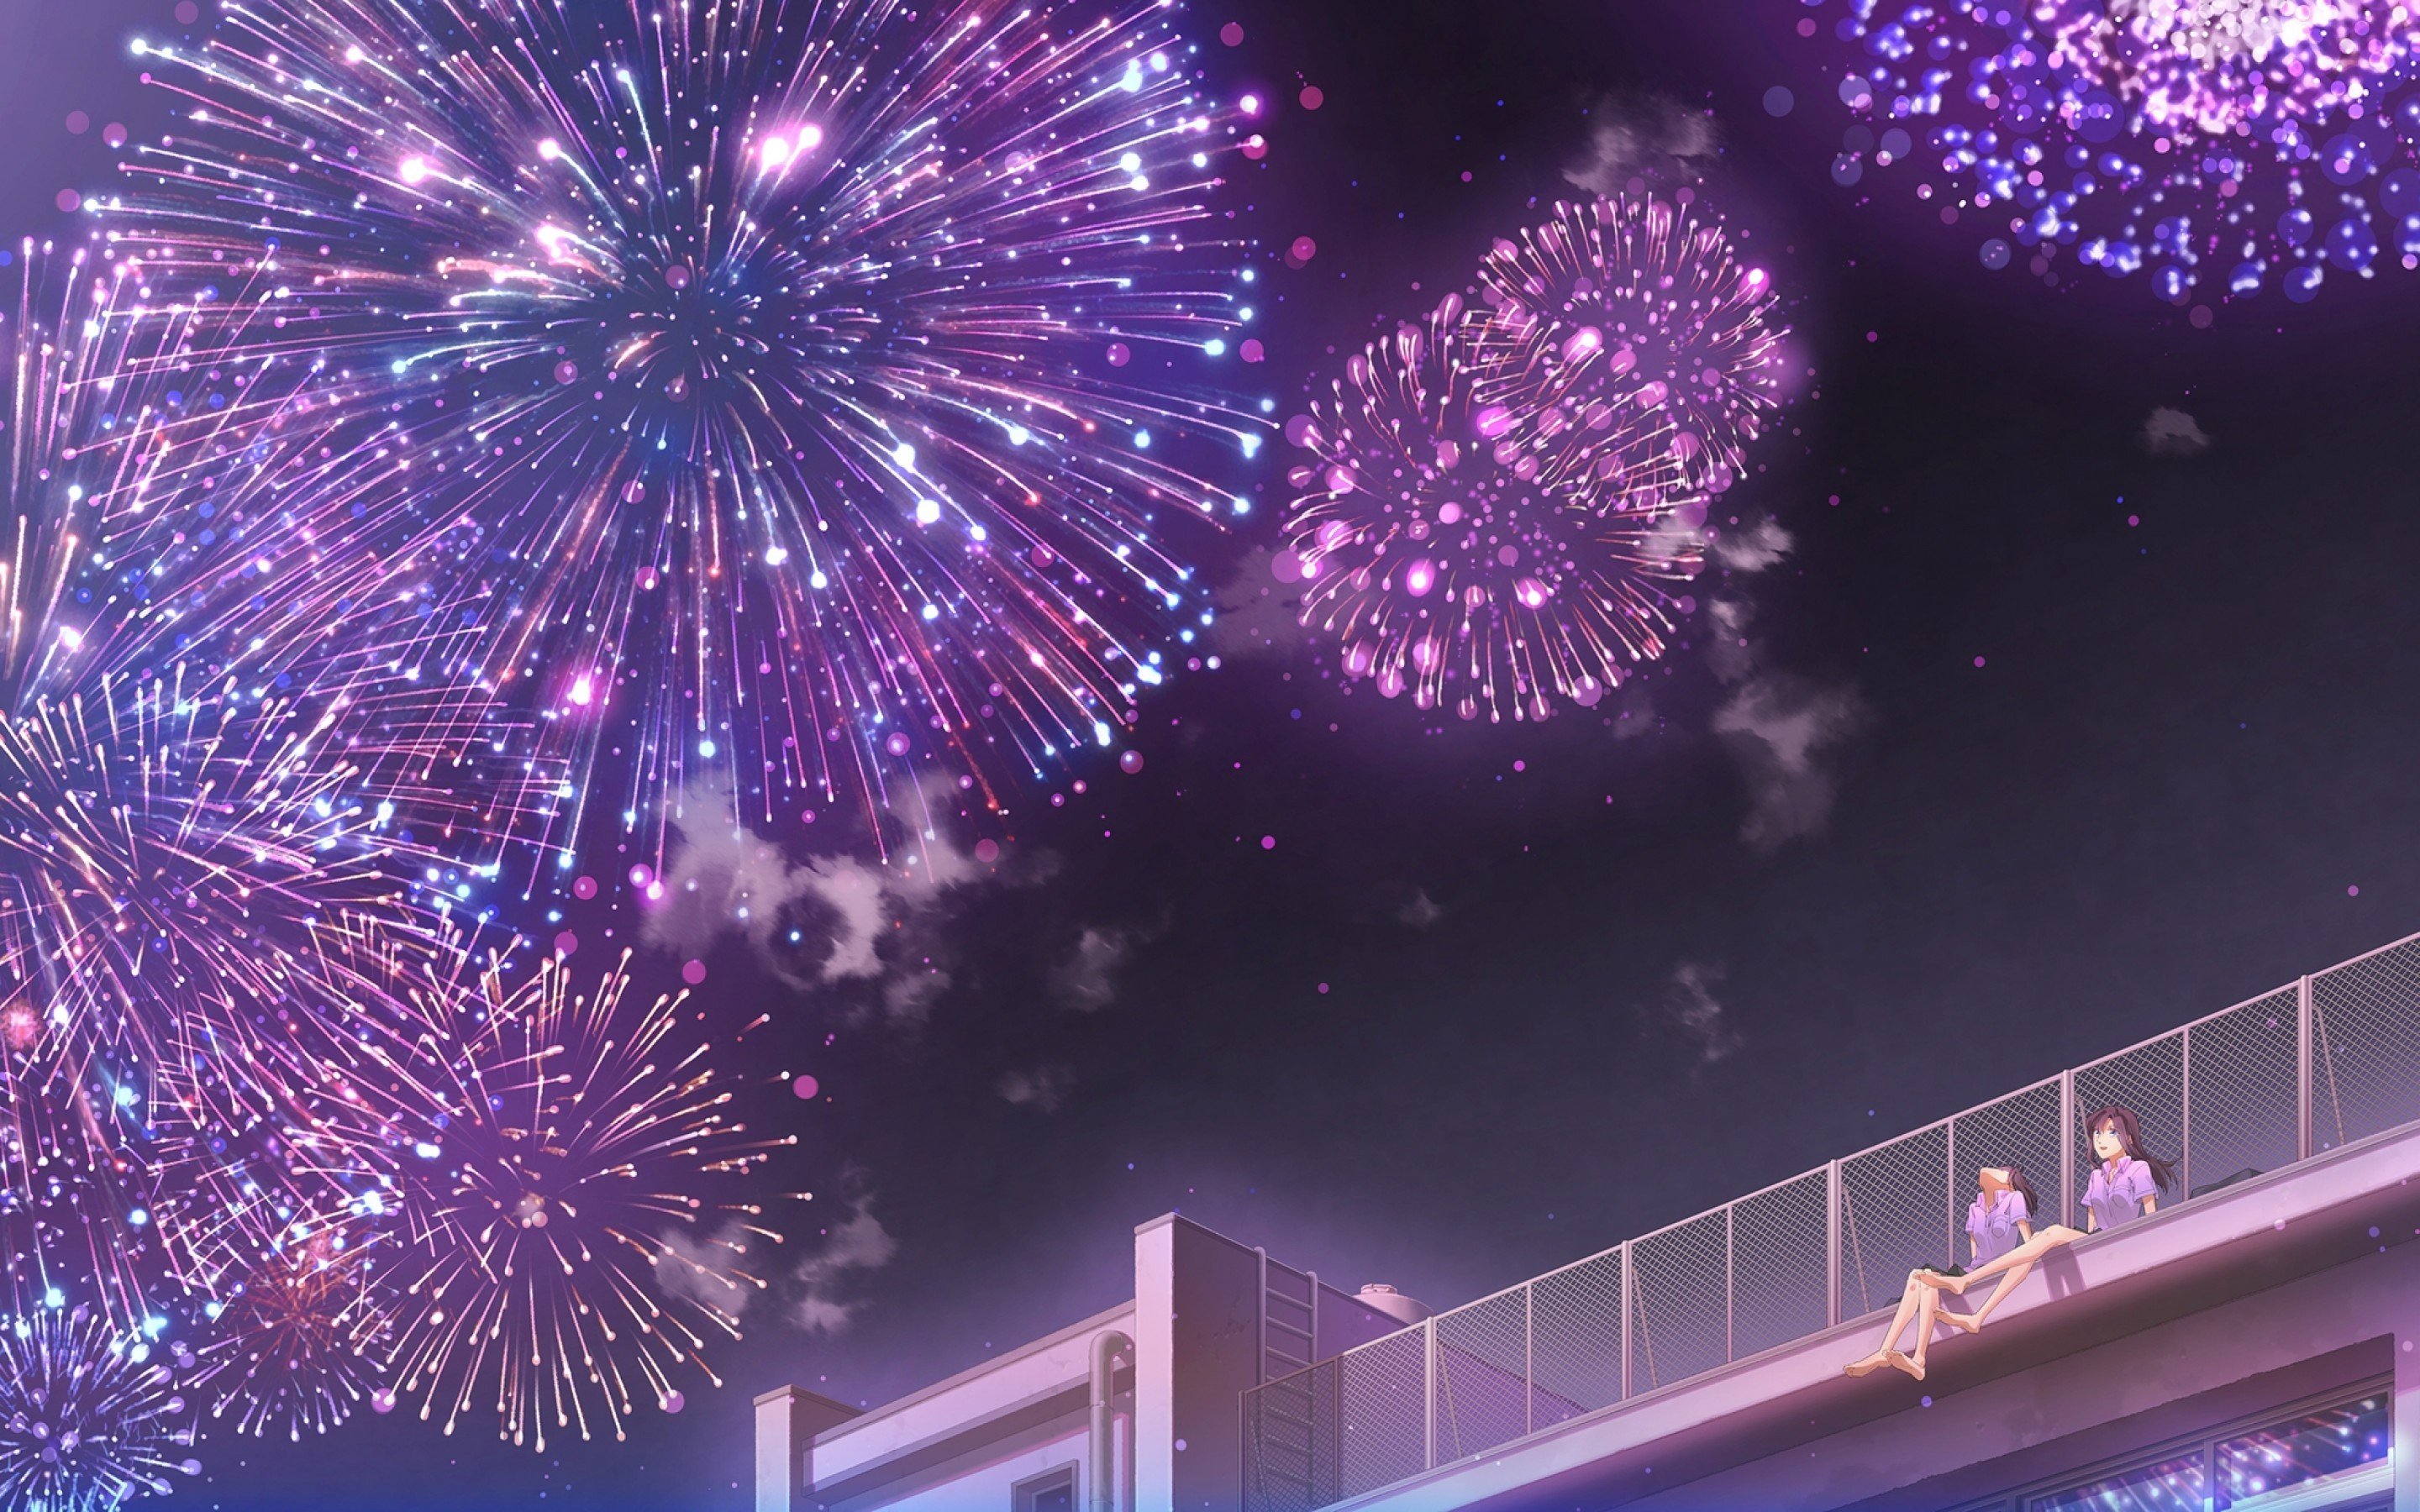 Fireworks: Ngắm nhìn pháo hoa chói lọi và đầy màu sắc tại đêm rực rỡ! Hãy đưa con mắt trên tấm ảnh này và cùng nhau tận hưởng khoảnh khắc tuyệt vời của những cơn bắn pháo hoa, mang đến cho bạn nguồn cảm hứng sáng tạo khó quên!